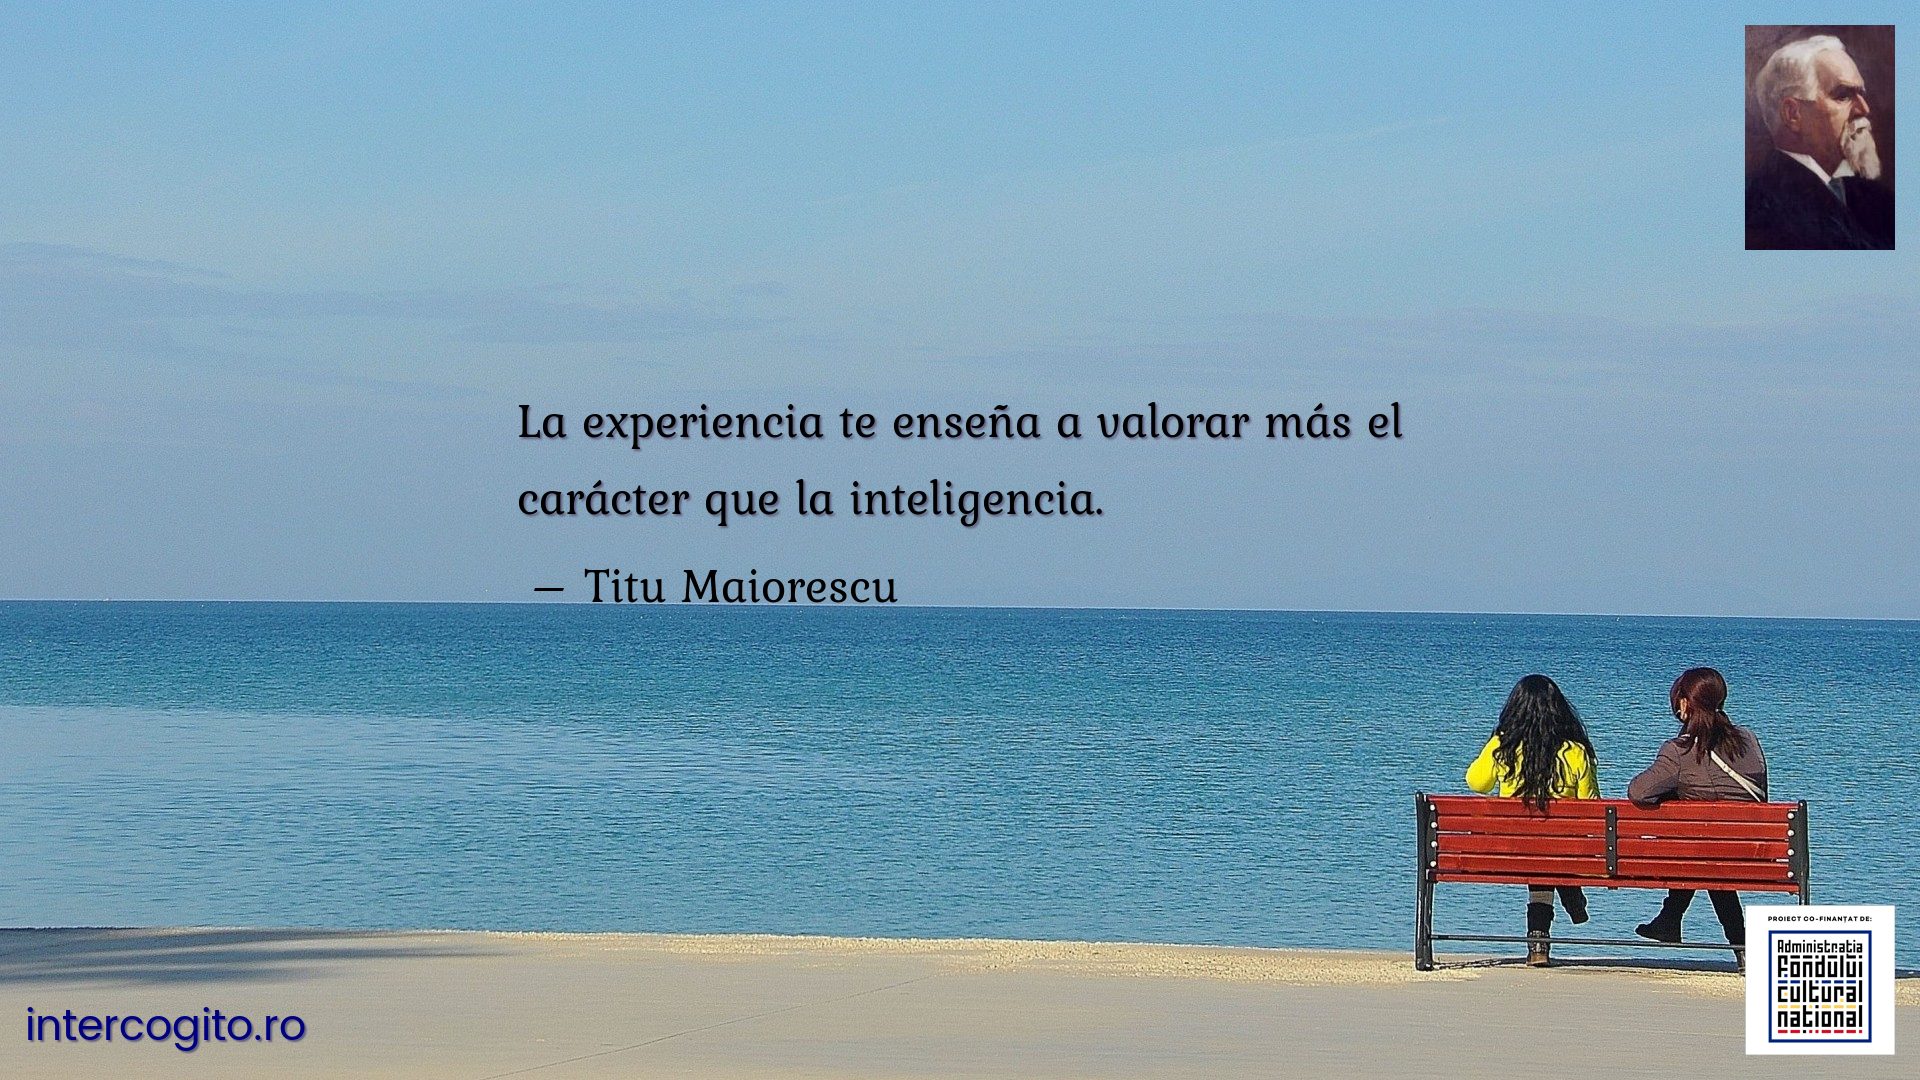 La experiencia te enseña a valorar más el carácter que la inteligencia.